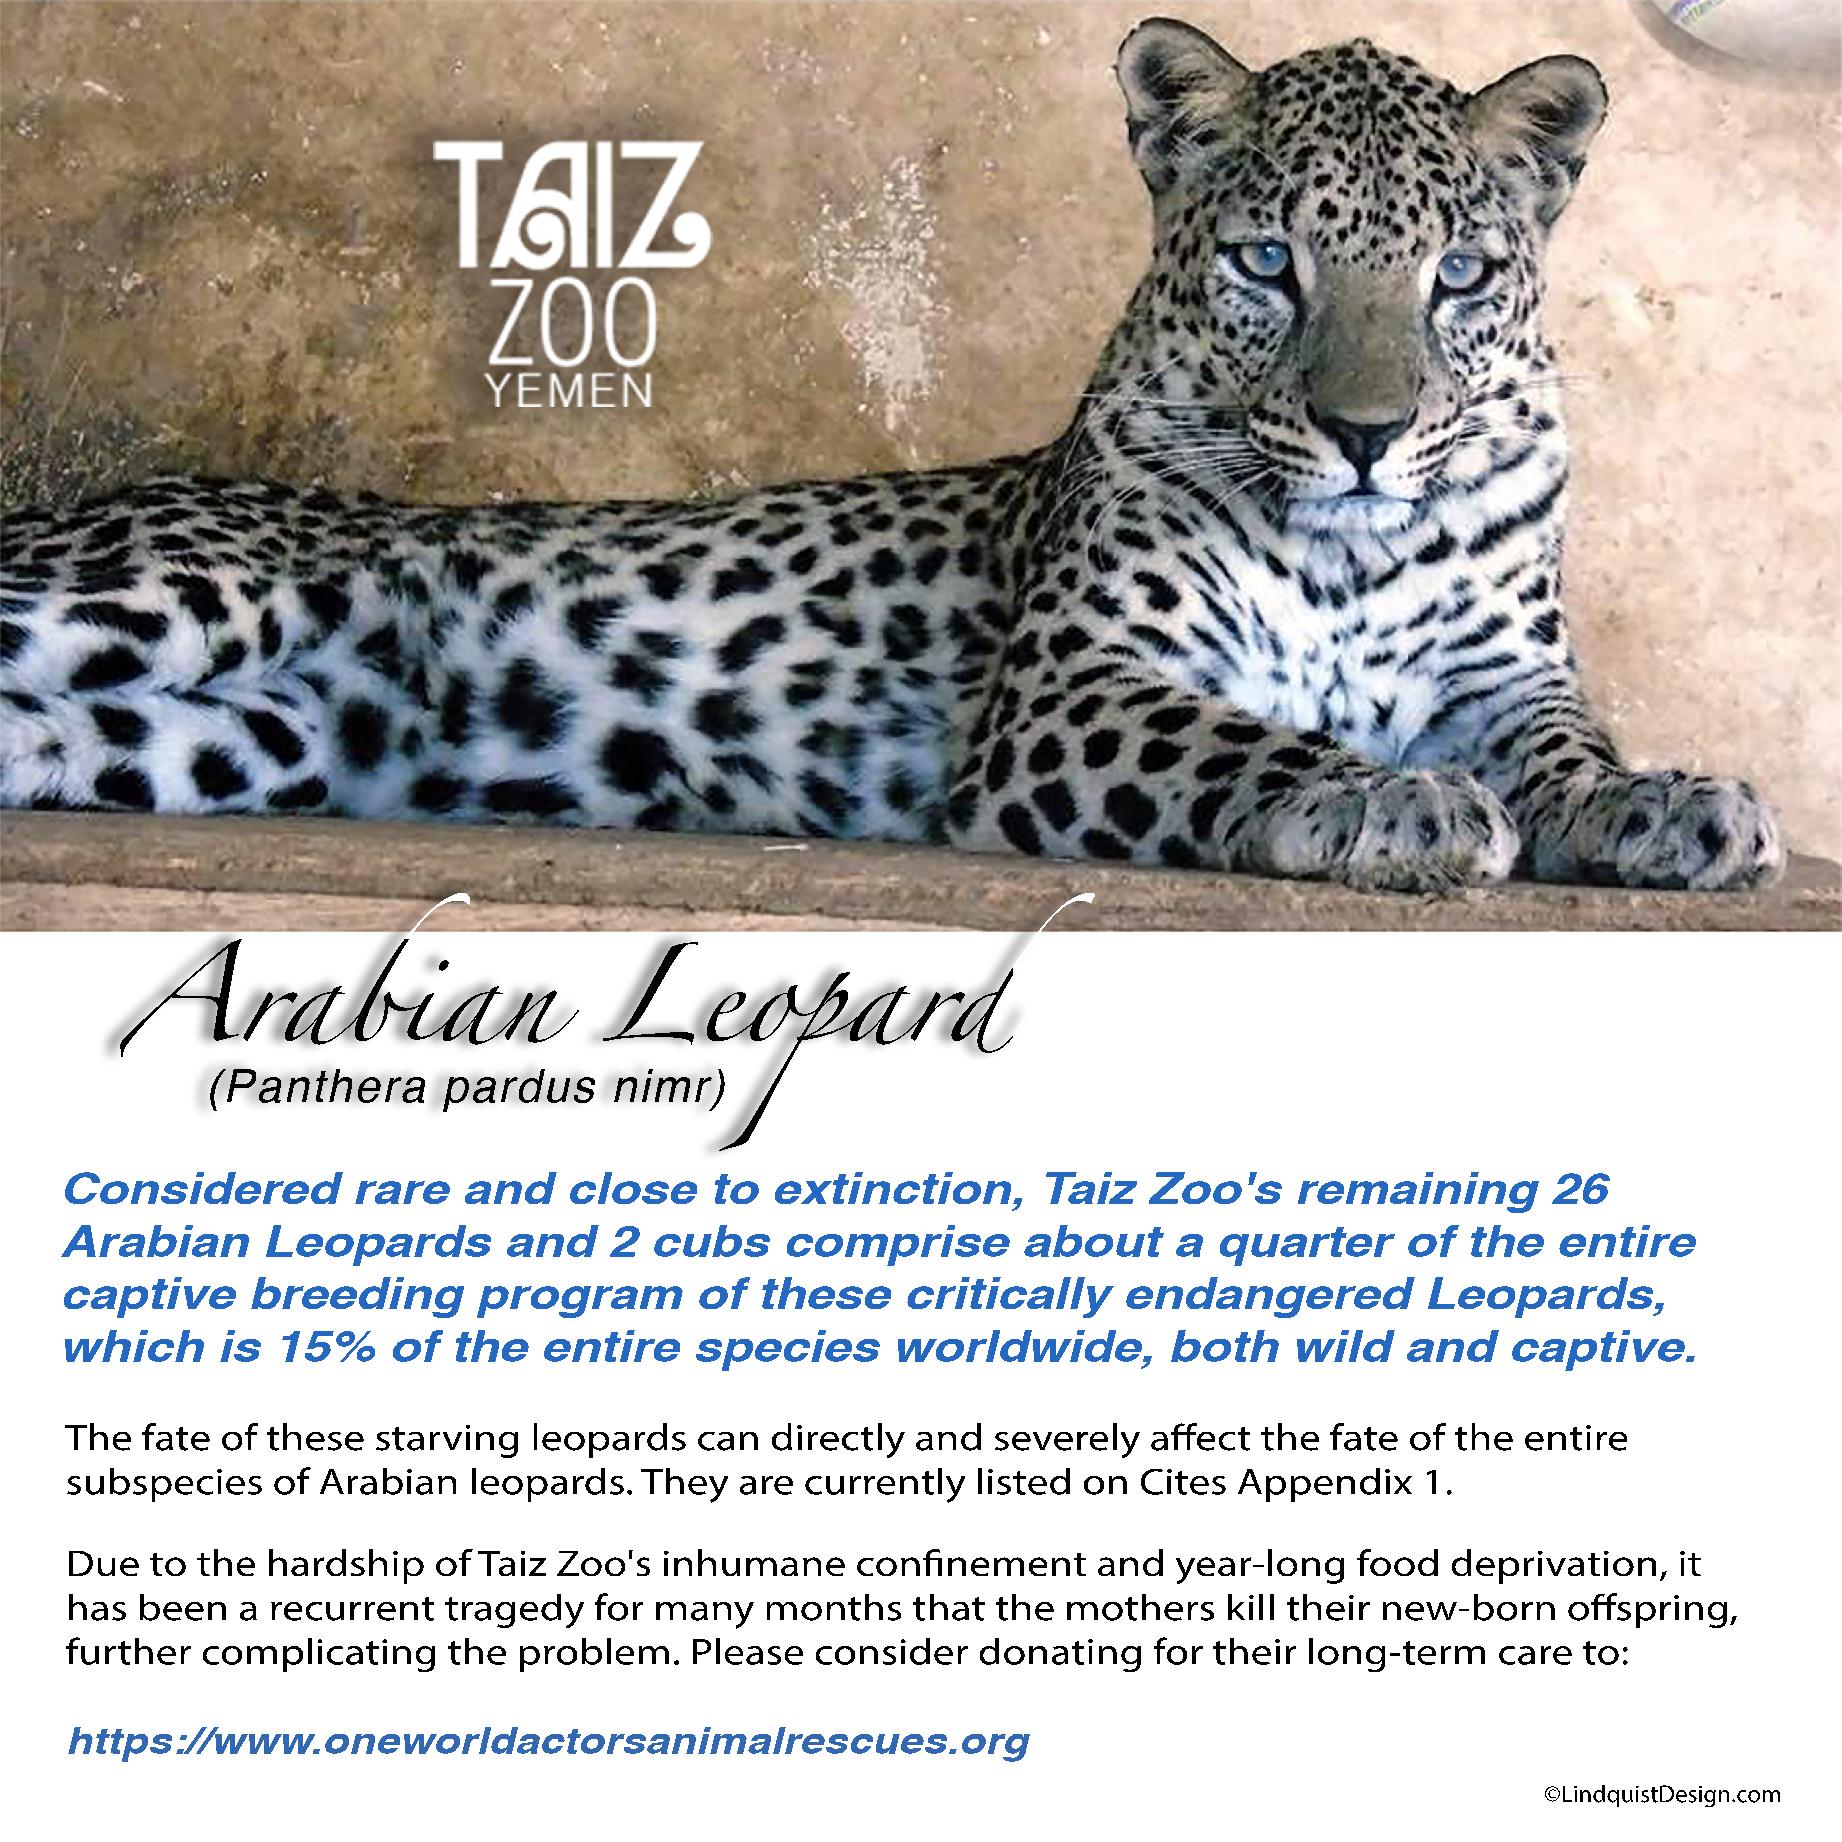 Arabian Leopard correct spelling Taiz Zoo flyer OWAp-AR with website.jpg